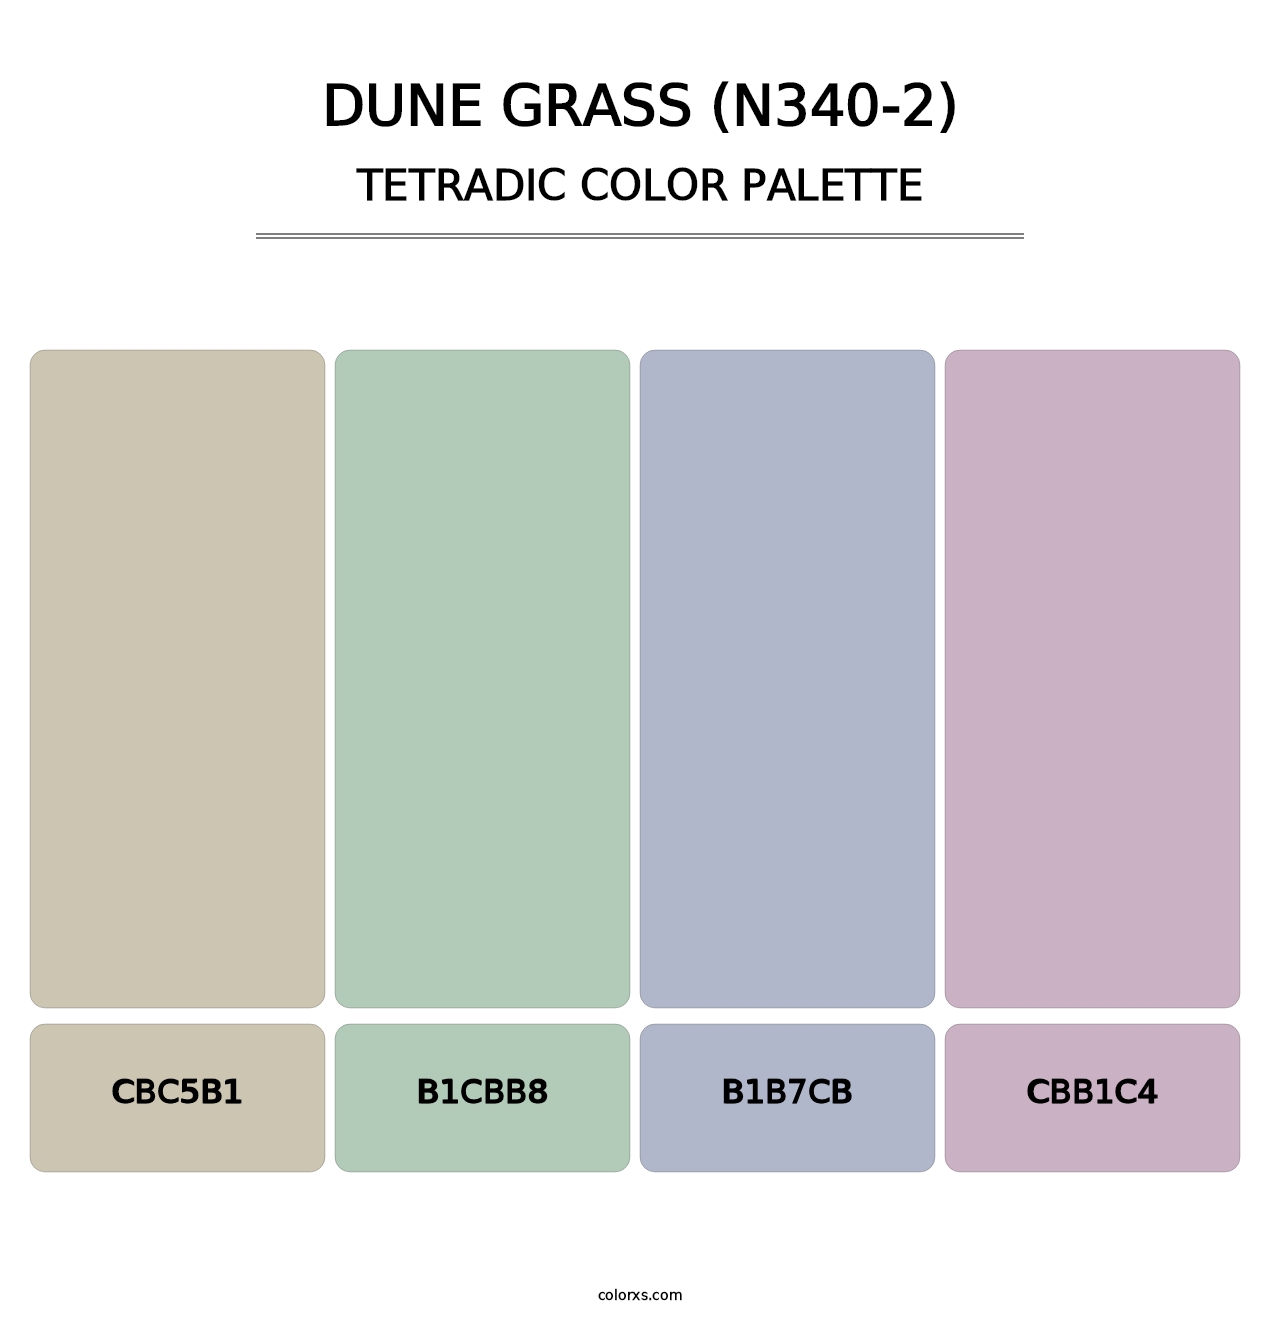 Dune Grass (N340-2) - Tetradic Color Palette